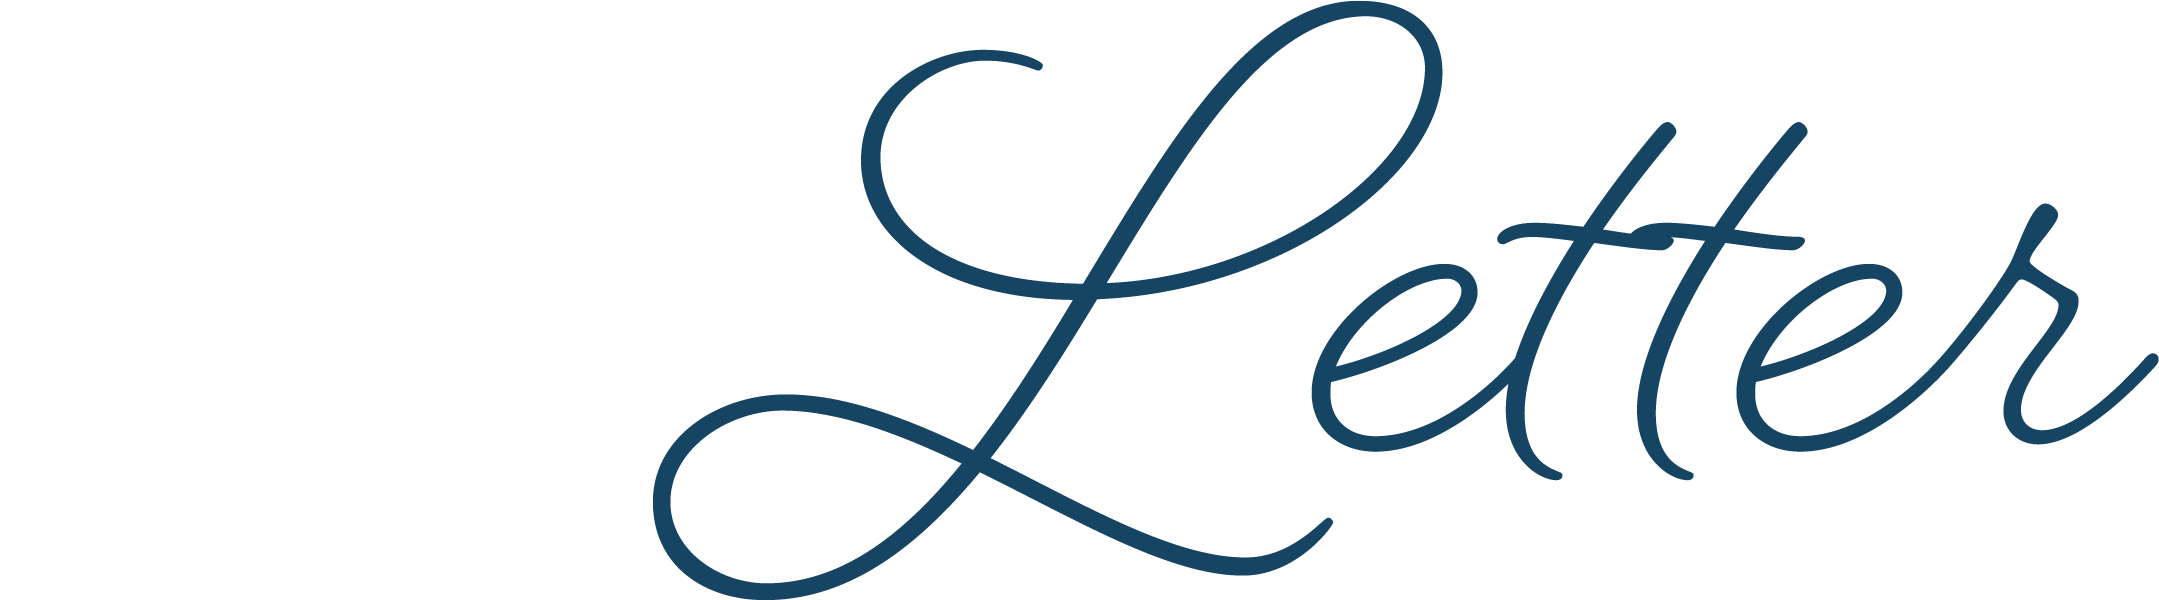 Logo Design Letter